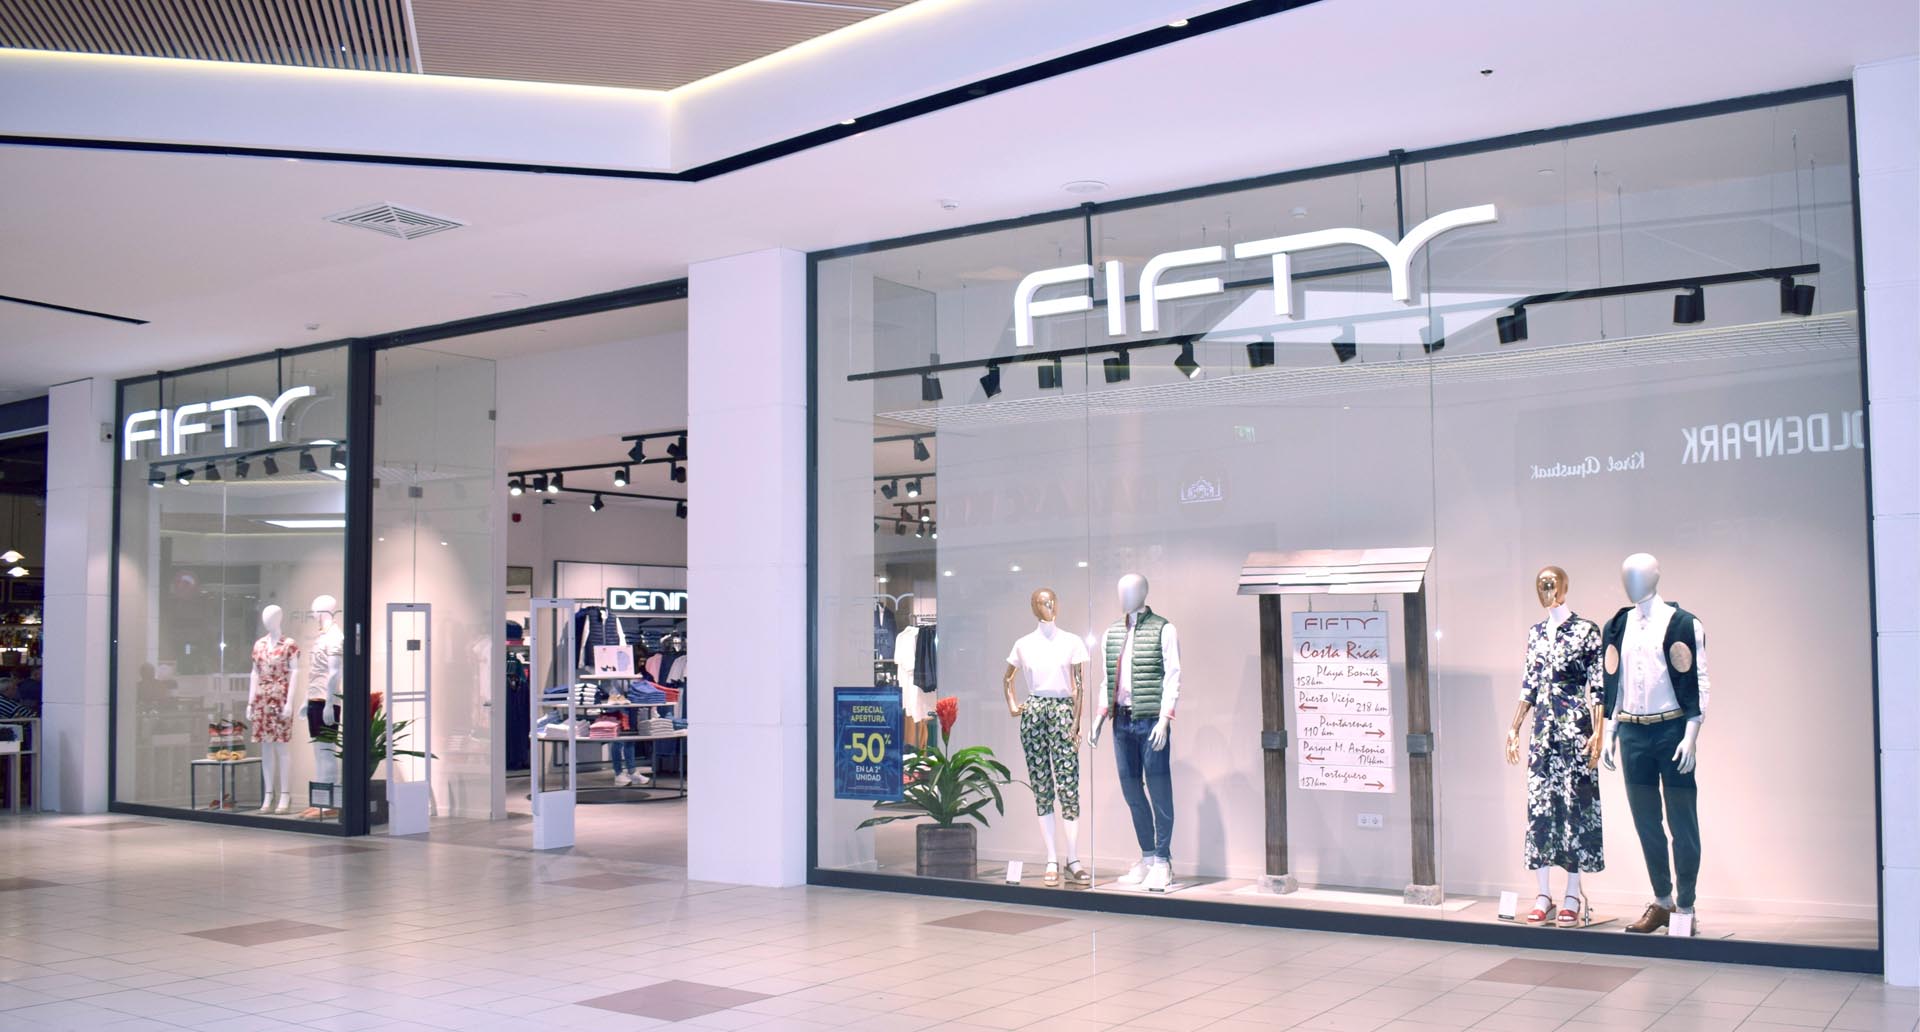 Fifty ouvre sa nouvelle boutique au centre commercial Txingudi